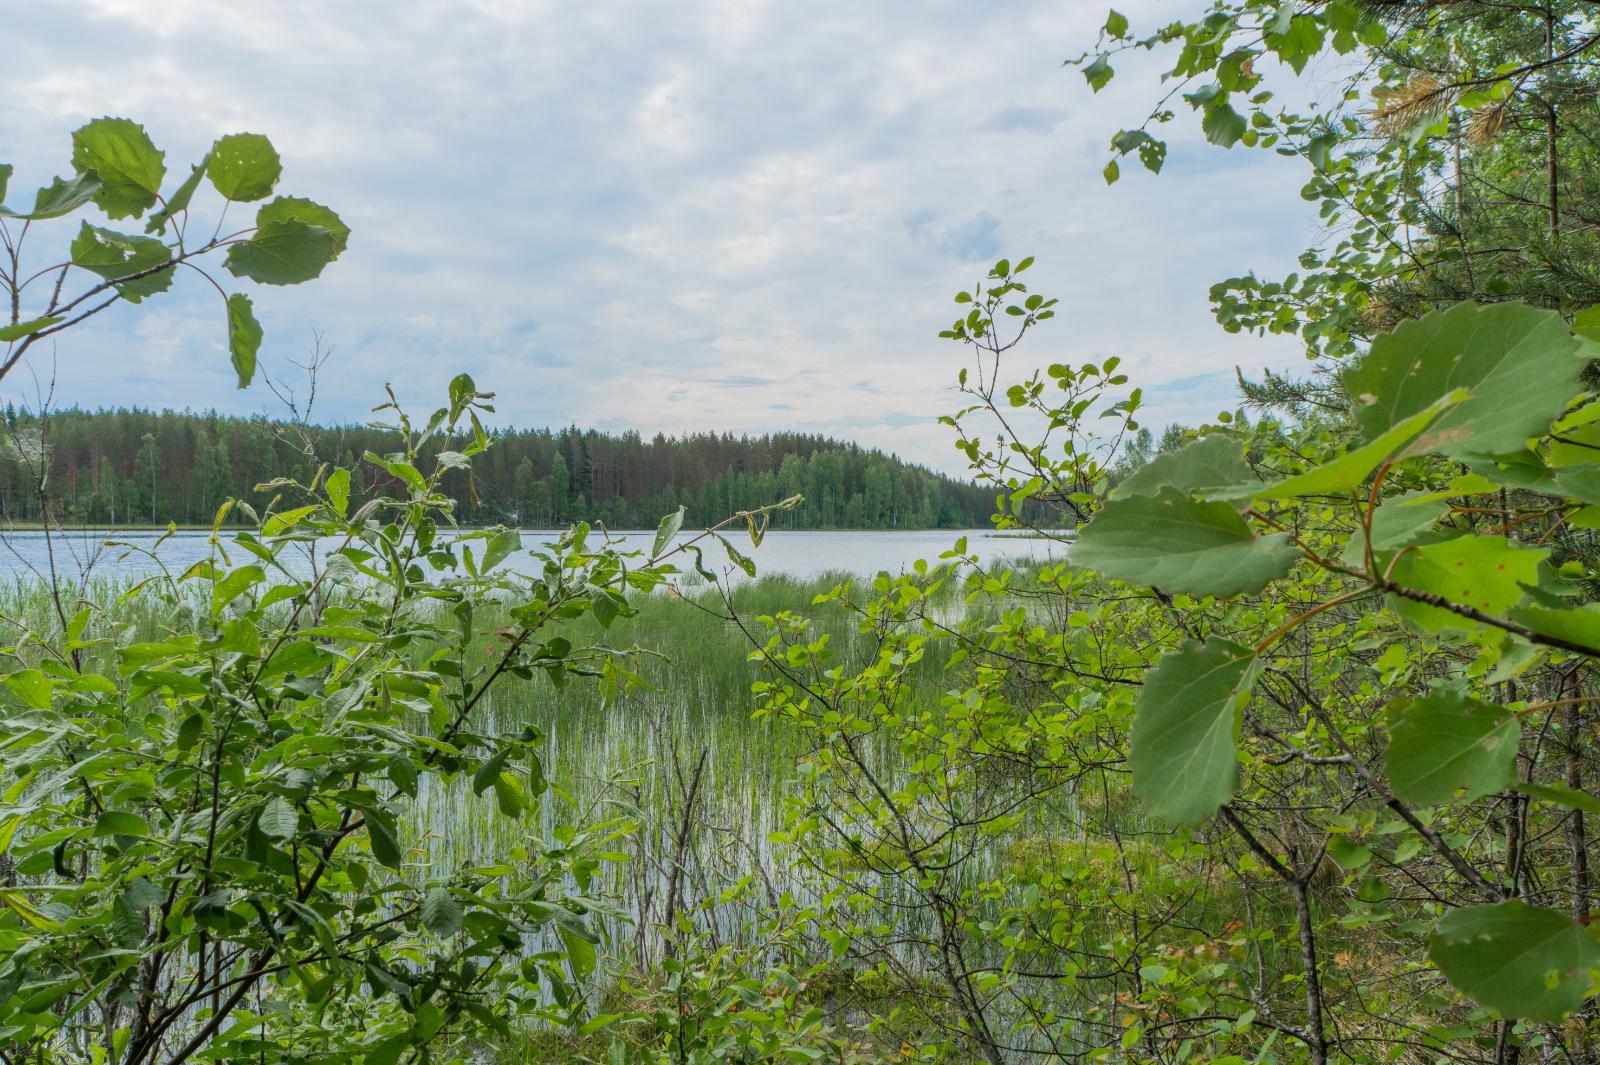 Lehtipuiden oksat reunustavat kesäistä järvimaisemaa. Rantavedessä on vesikasveja.